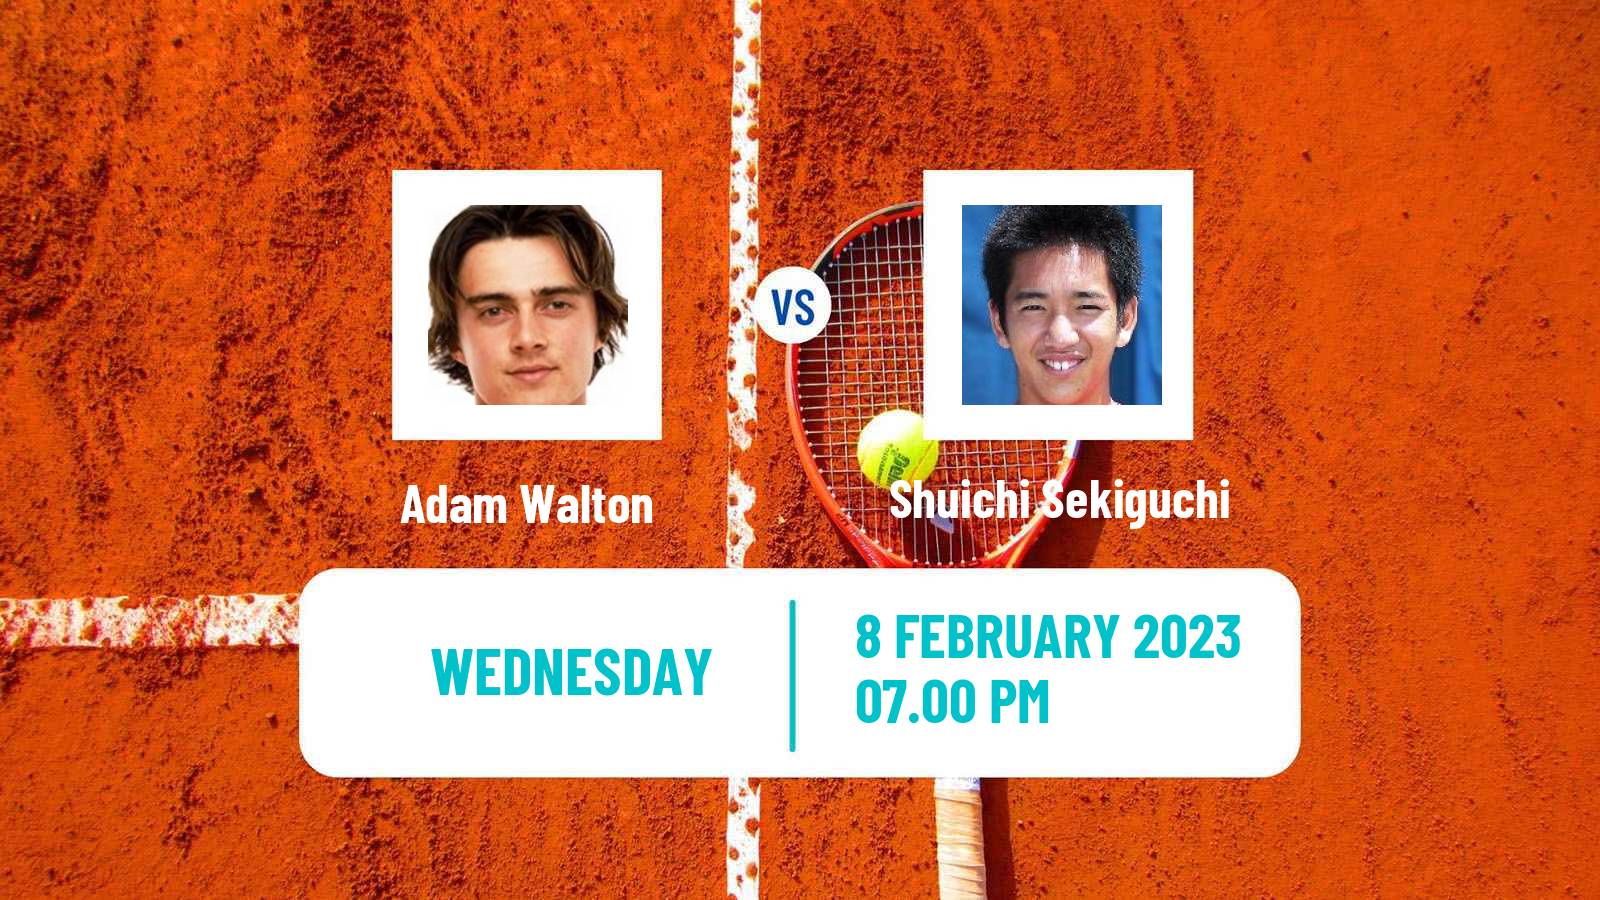 Tennis ITF Tournaments Adam Walton - Shuichi Sekiguchi